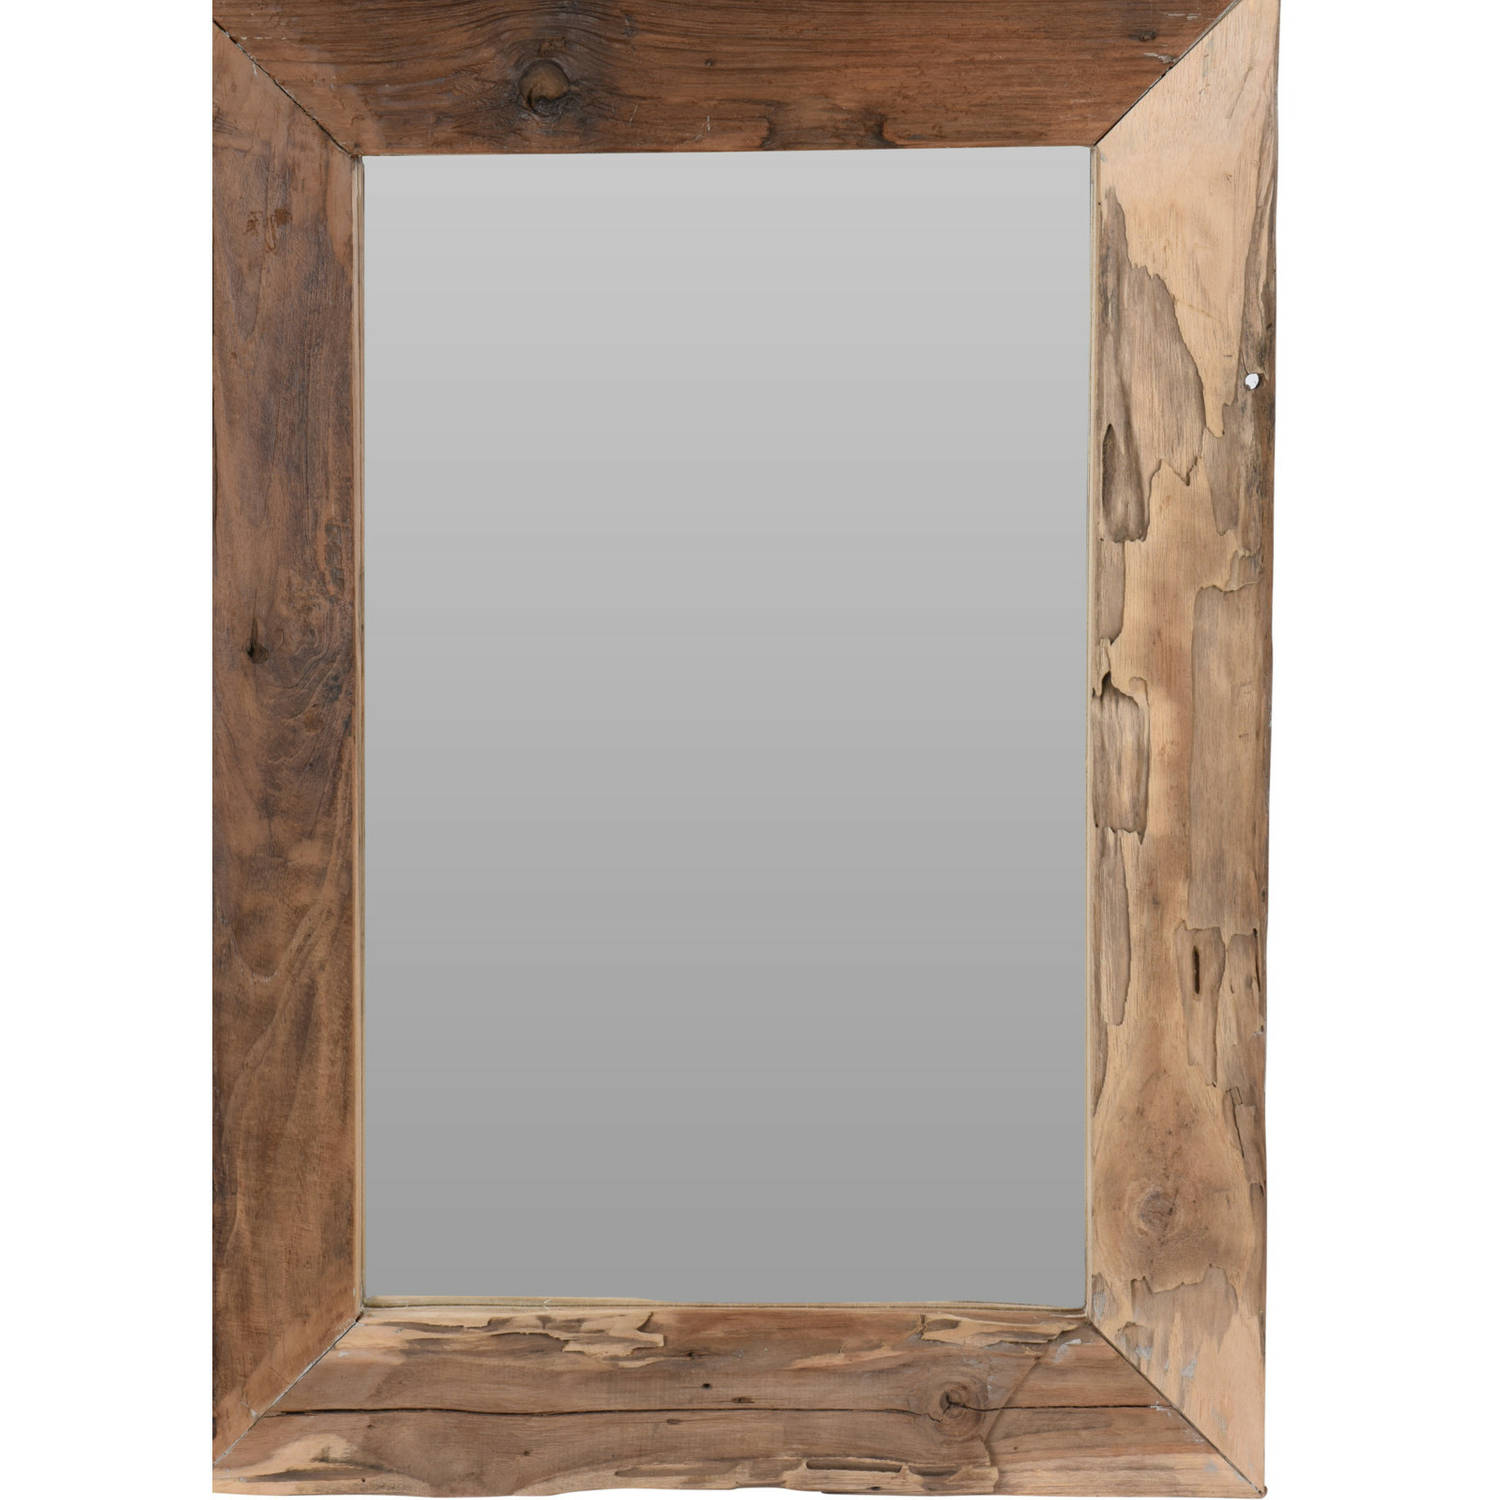 Spiegel-wandspiegel Teak Hout Bruin Rechthoek 70 X 50 Cm Spiegels